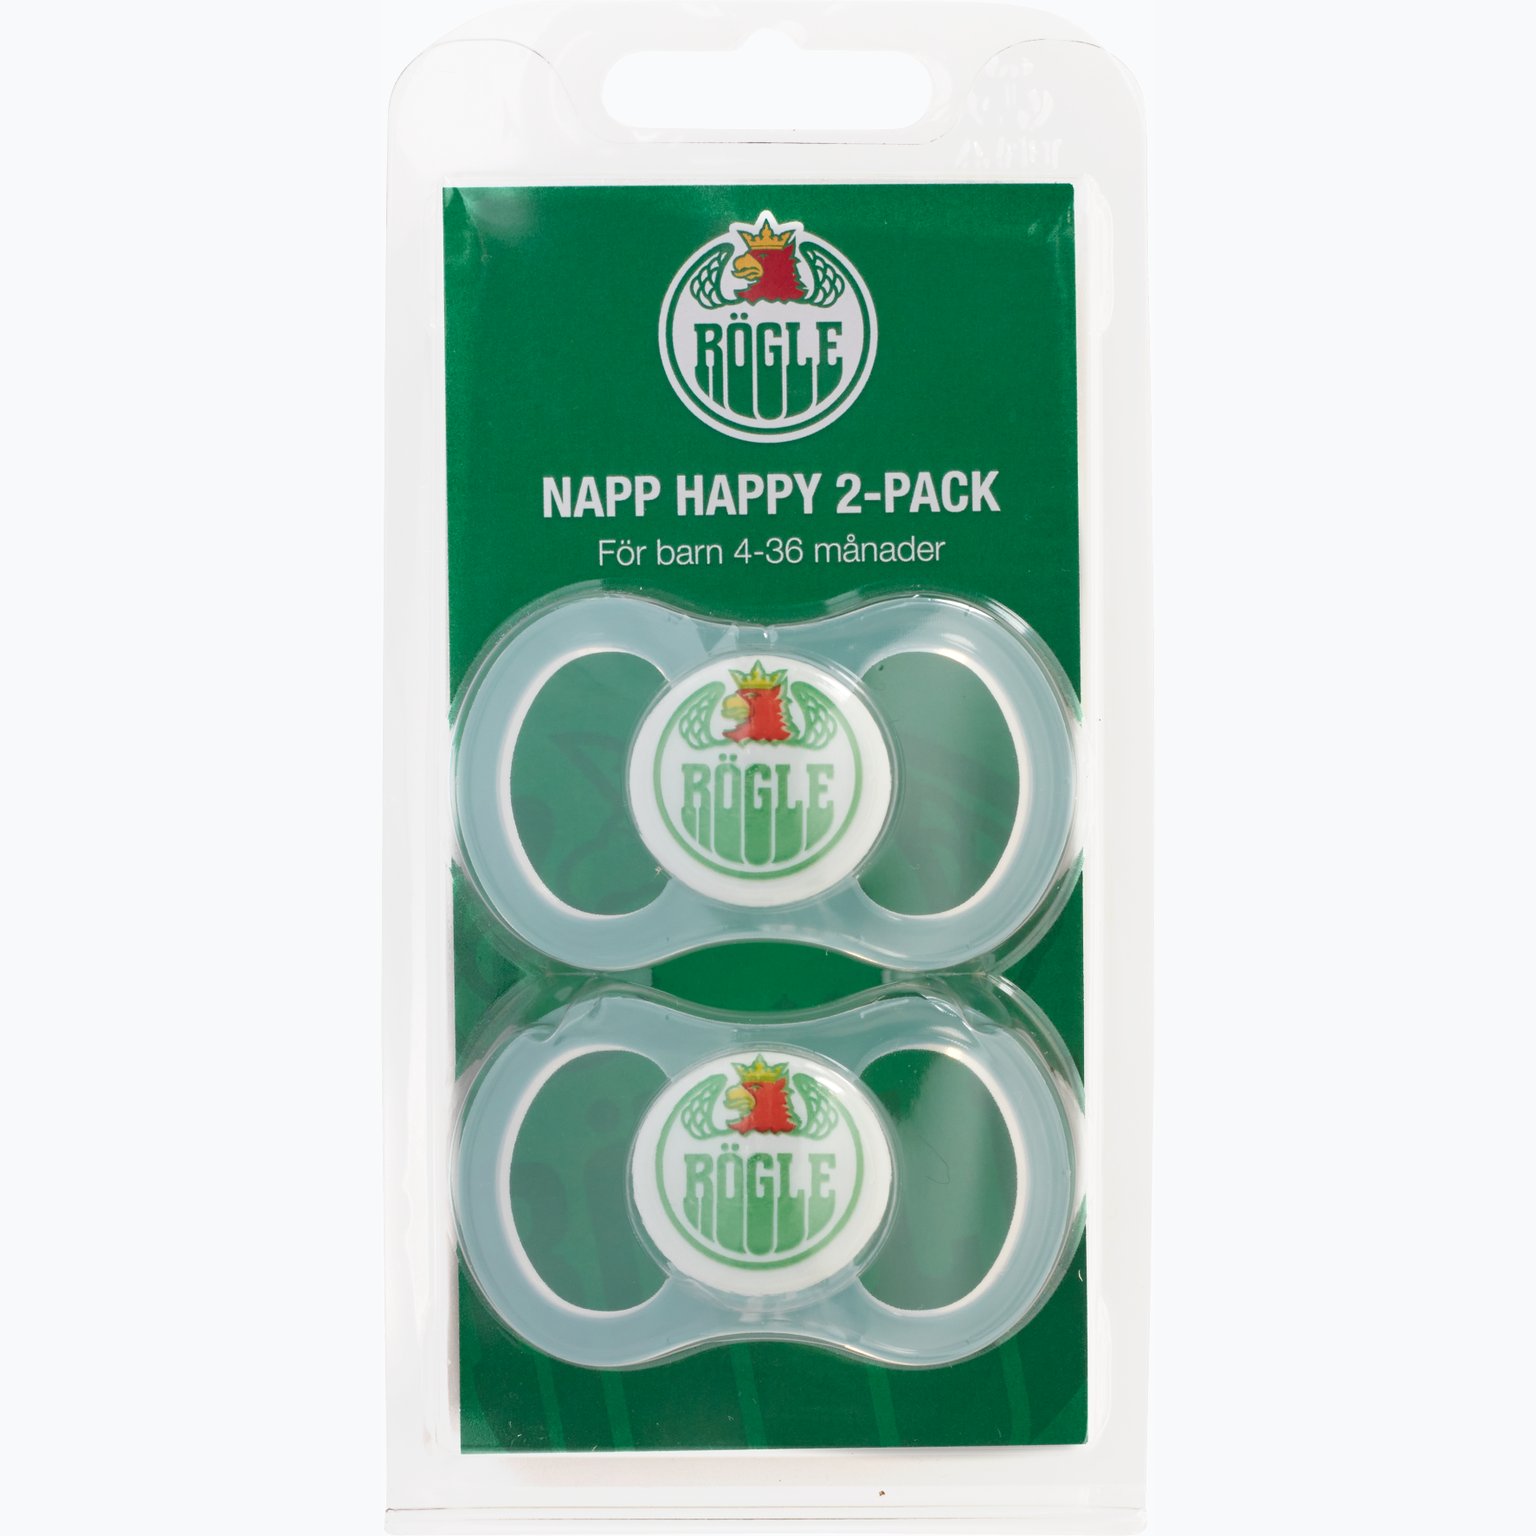 Happy Glow Napp 2-pack